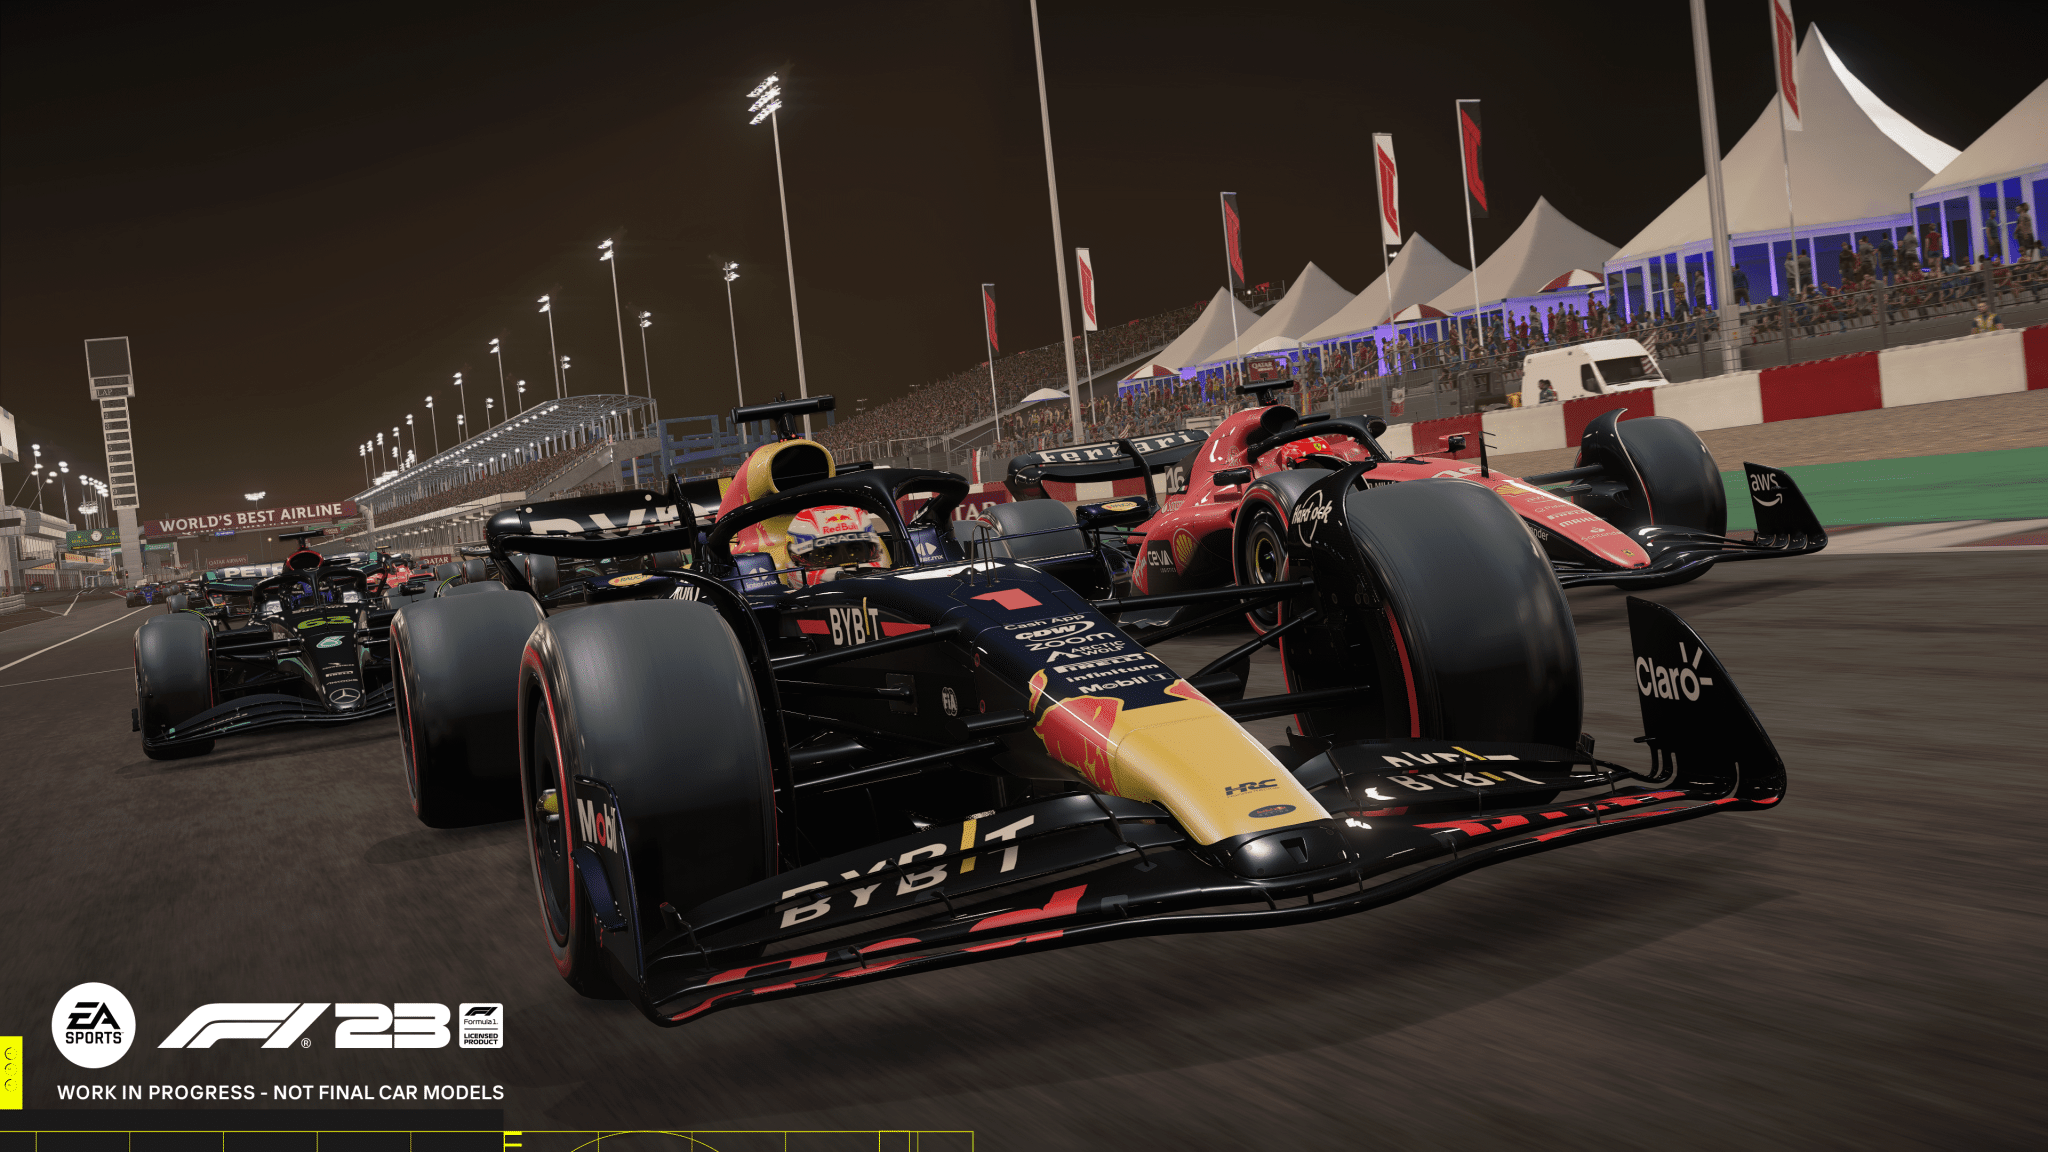 Dal garage alla pista nel nuovo trailer di EA Sports F1 23! 4